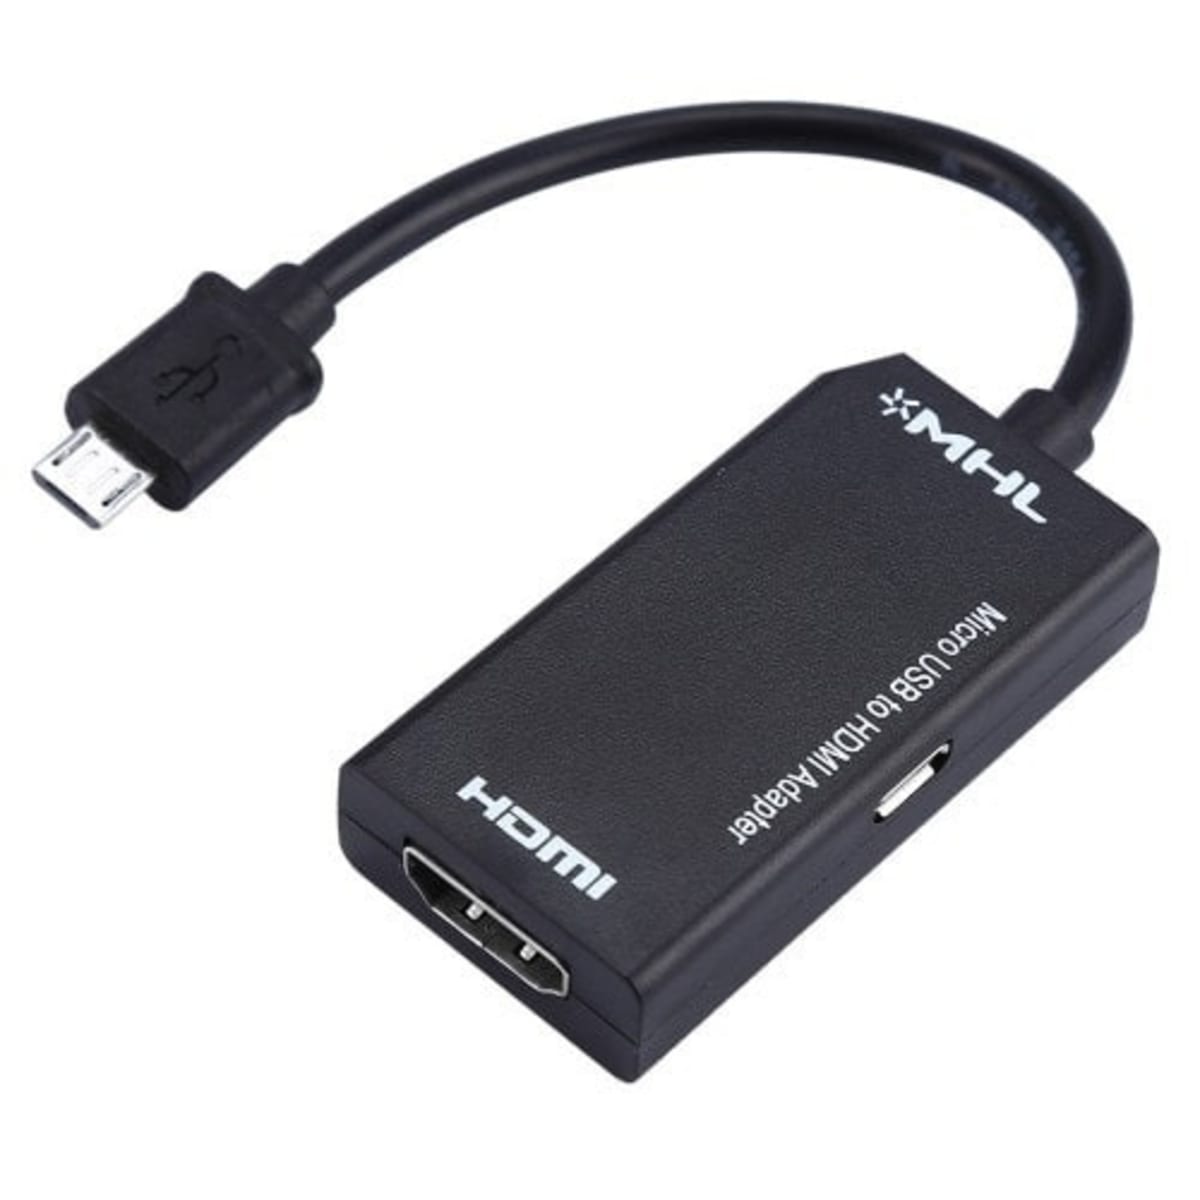 Переходник для подключения телефона. Адаптер MHL Micro USB шт/HDMI ГН (AC 007-5) Alencom. Кабель USB-HDMI (подключить смартфон к телевизору). Адаптер смартфон телевизор юсби-с на HDMI. Однопортовый USB - HDMI.